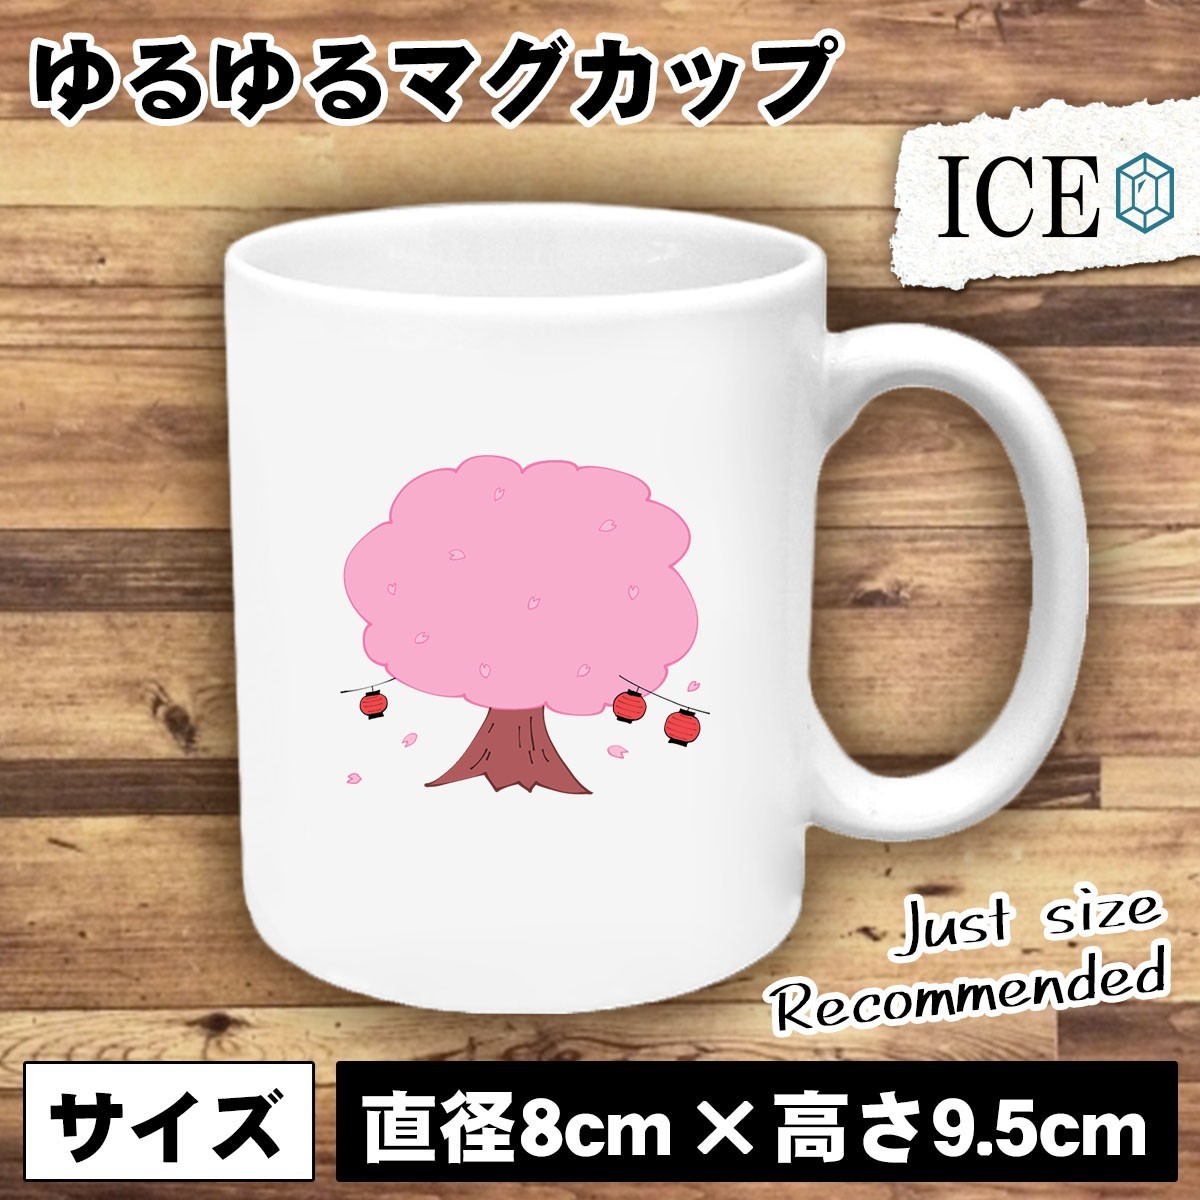 特価商品 桜 おもしろ マグカップ コップ 陶器 可愛い かわいい 白 シンプル カッコイイ シュール 面白い ジョーク ゆるい